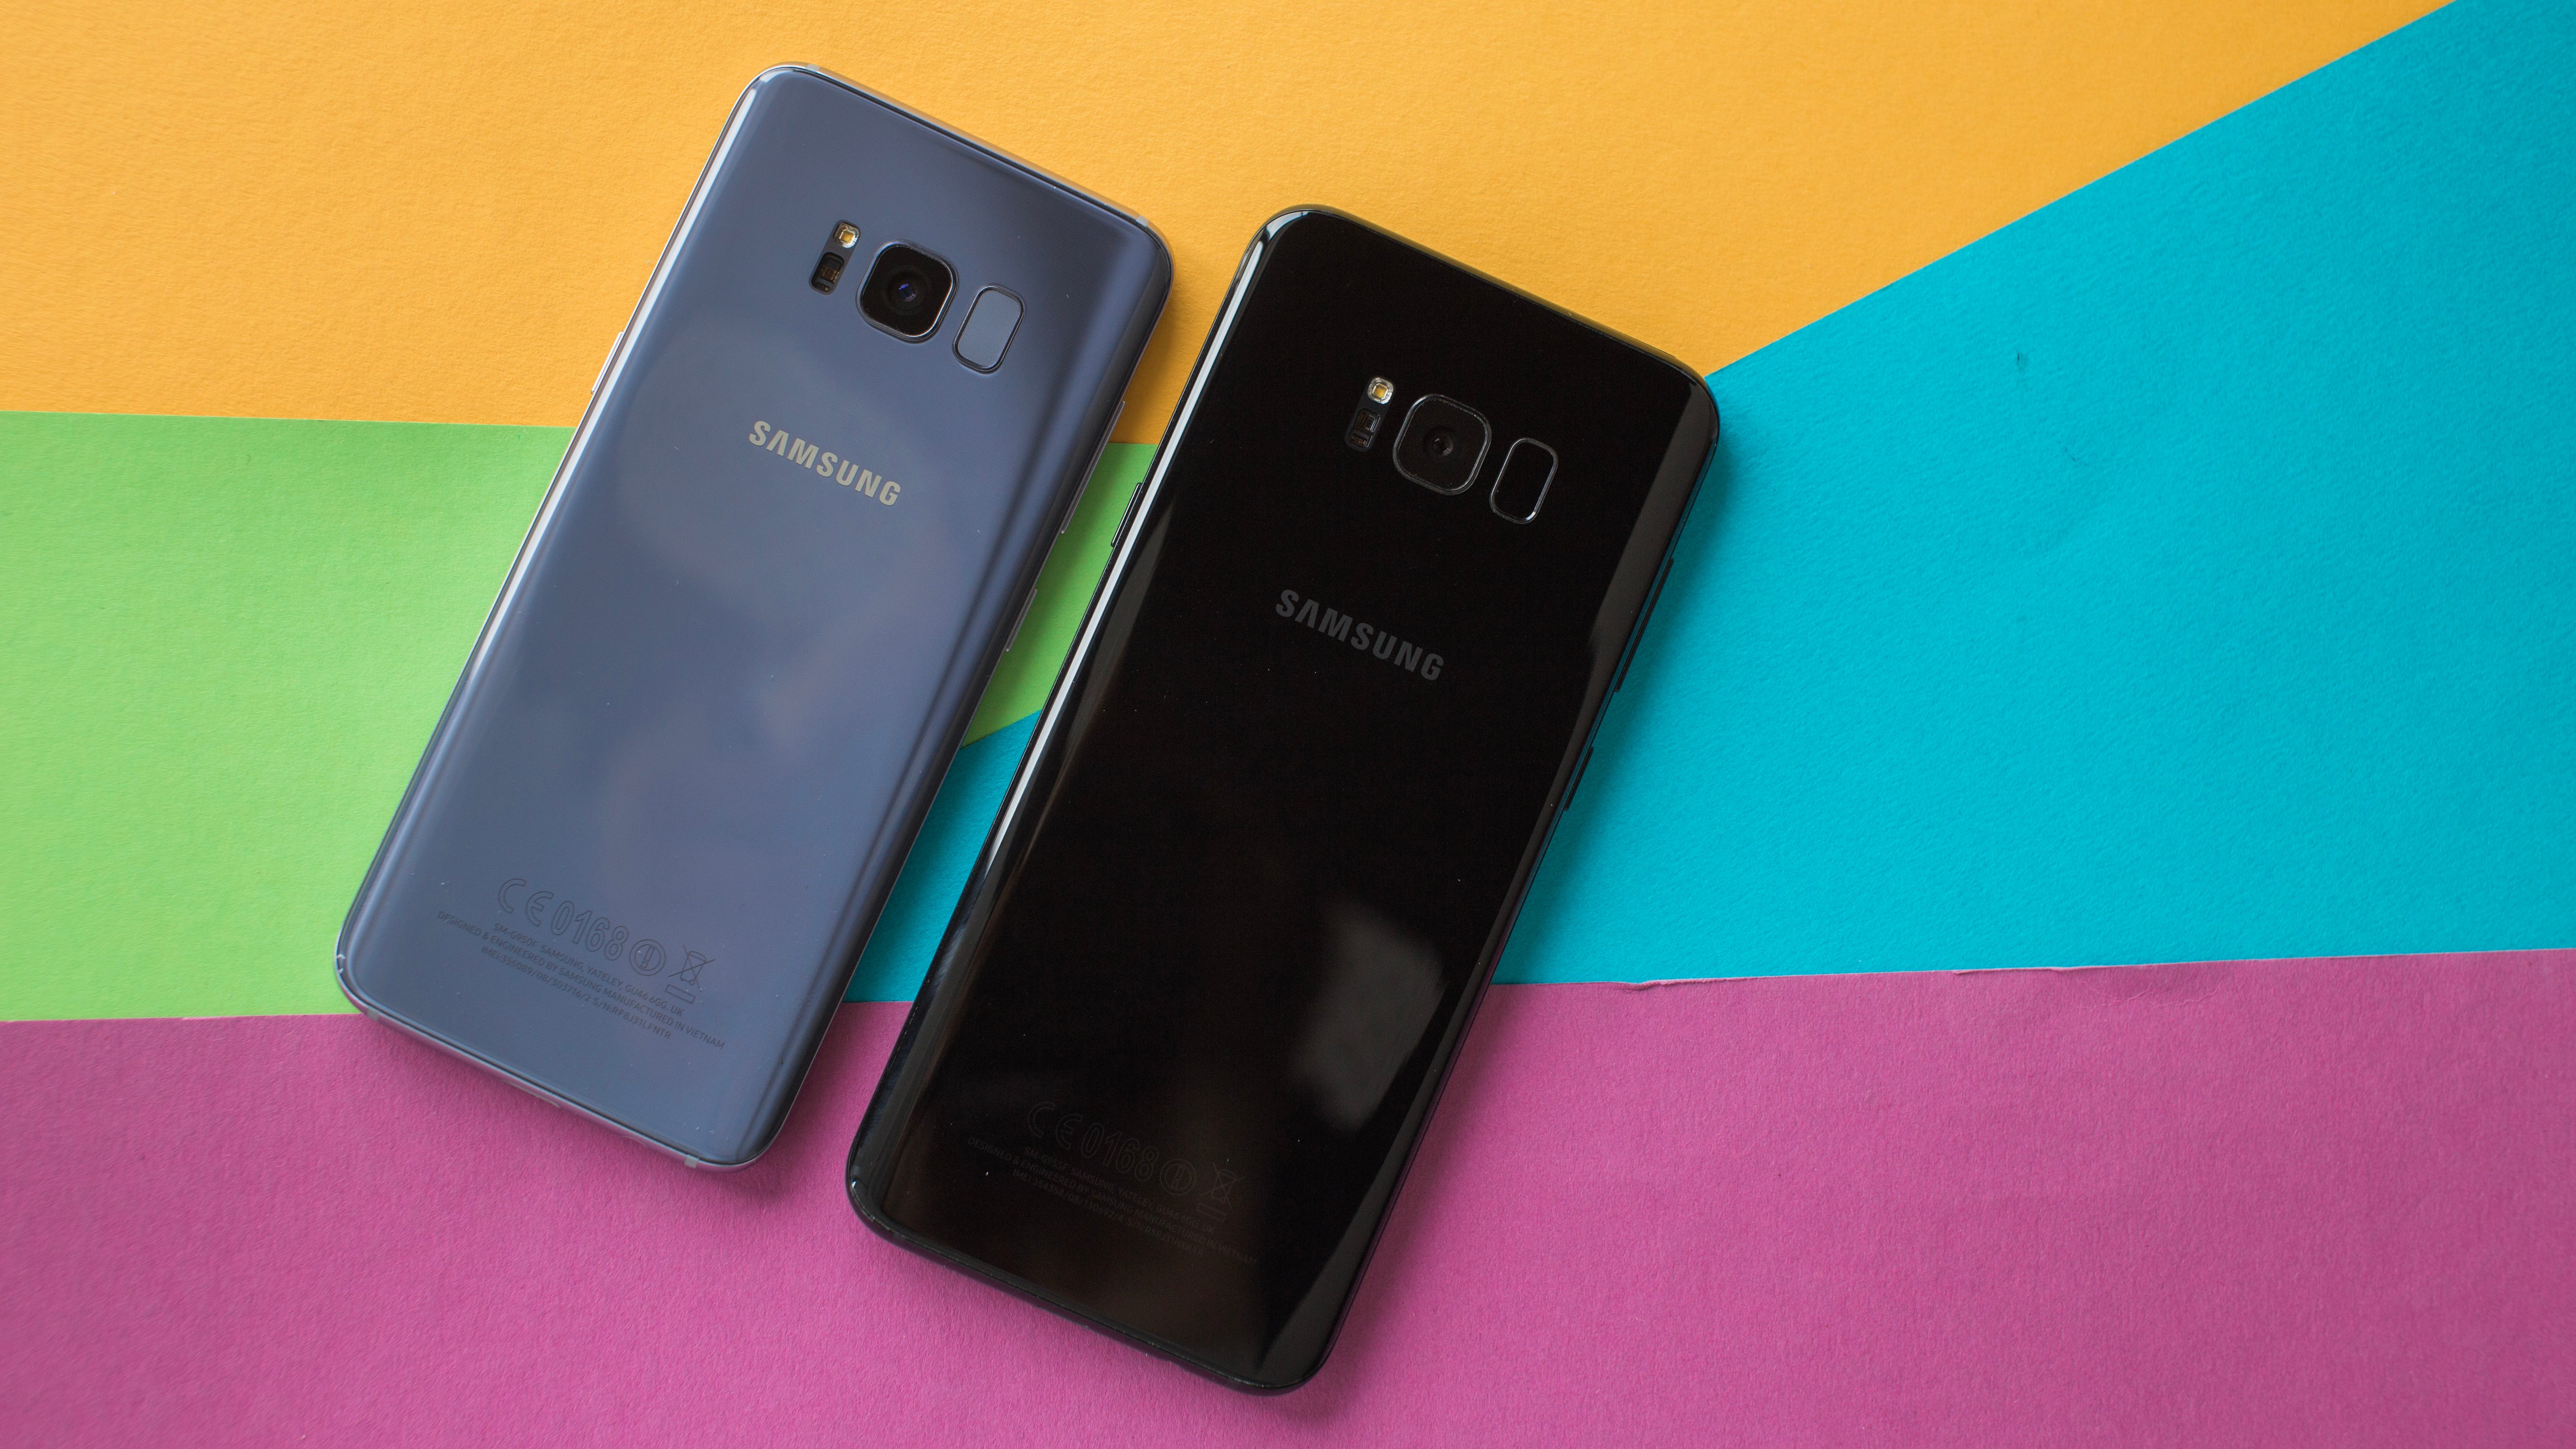 Galaxy سيتم تحديث S8 و S8 Plus كل ثلاثة أشهر ، وفقًا لشركة Samsung 60